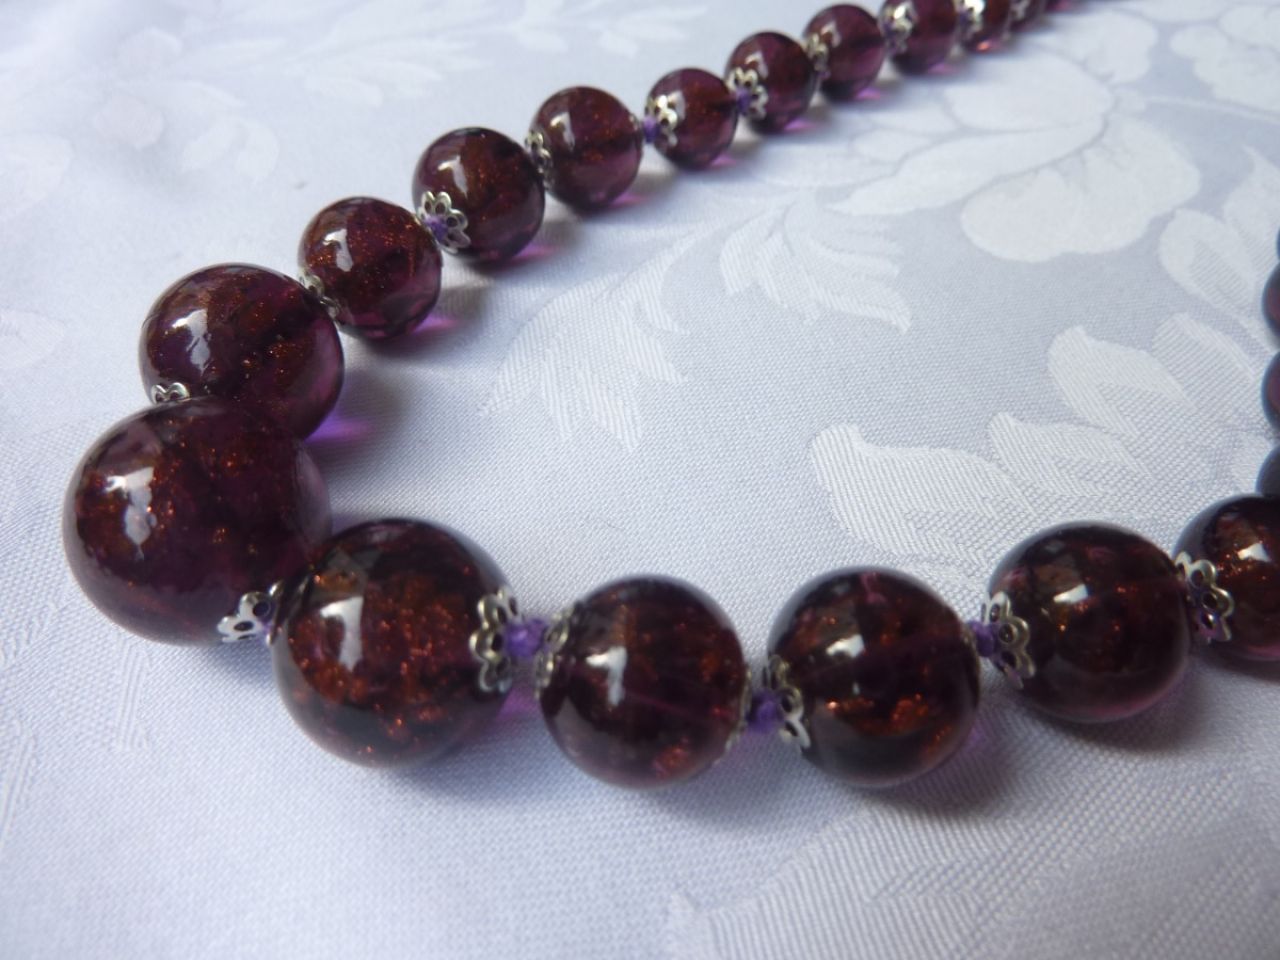 collier gradué en perles de verre de Murano , couleur mauve foncé, fil de soie mauve, fermeture argenté. 